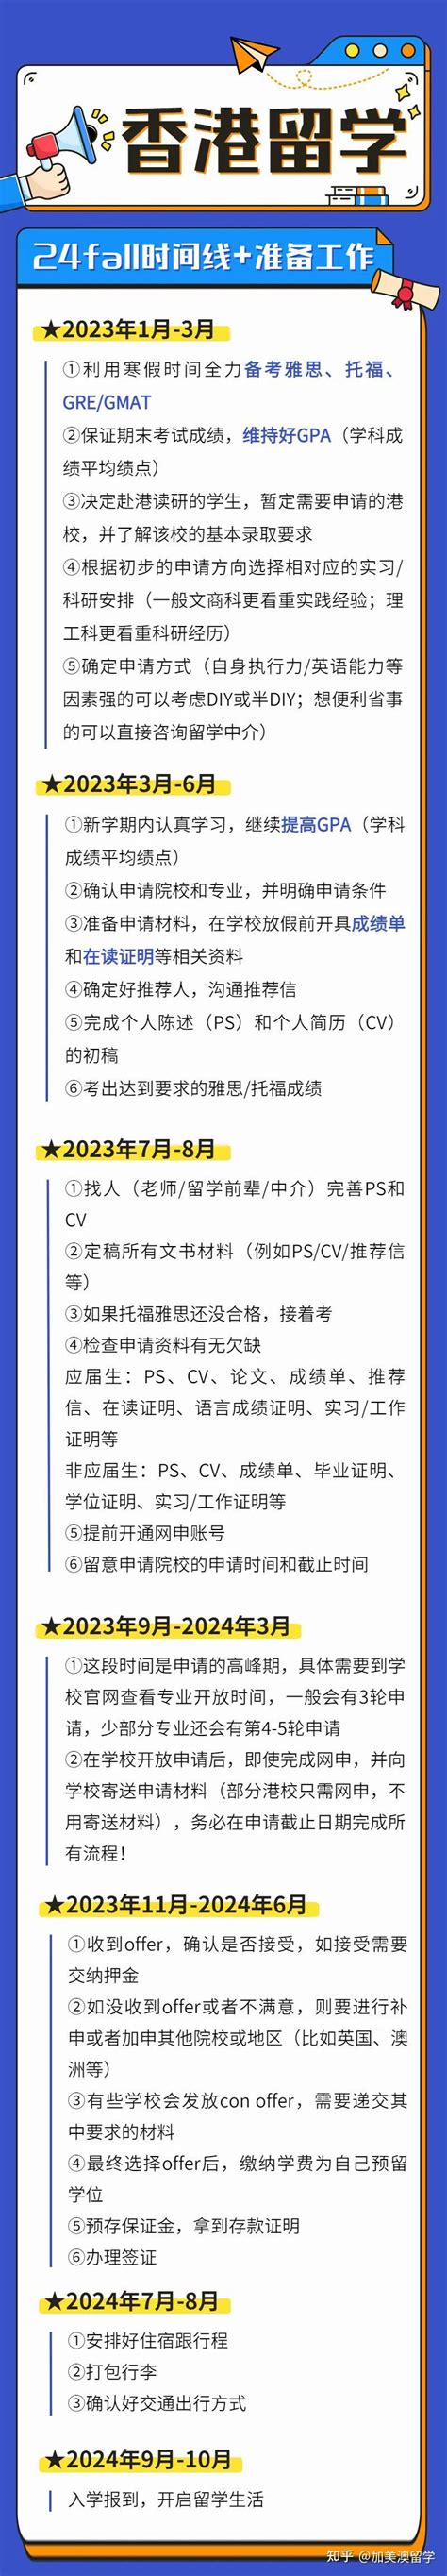 2023香港留学申请时间规划及申请要求-留学资讯-Hi学校